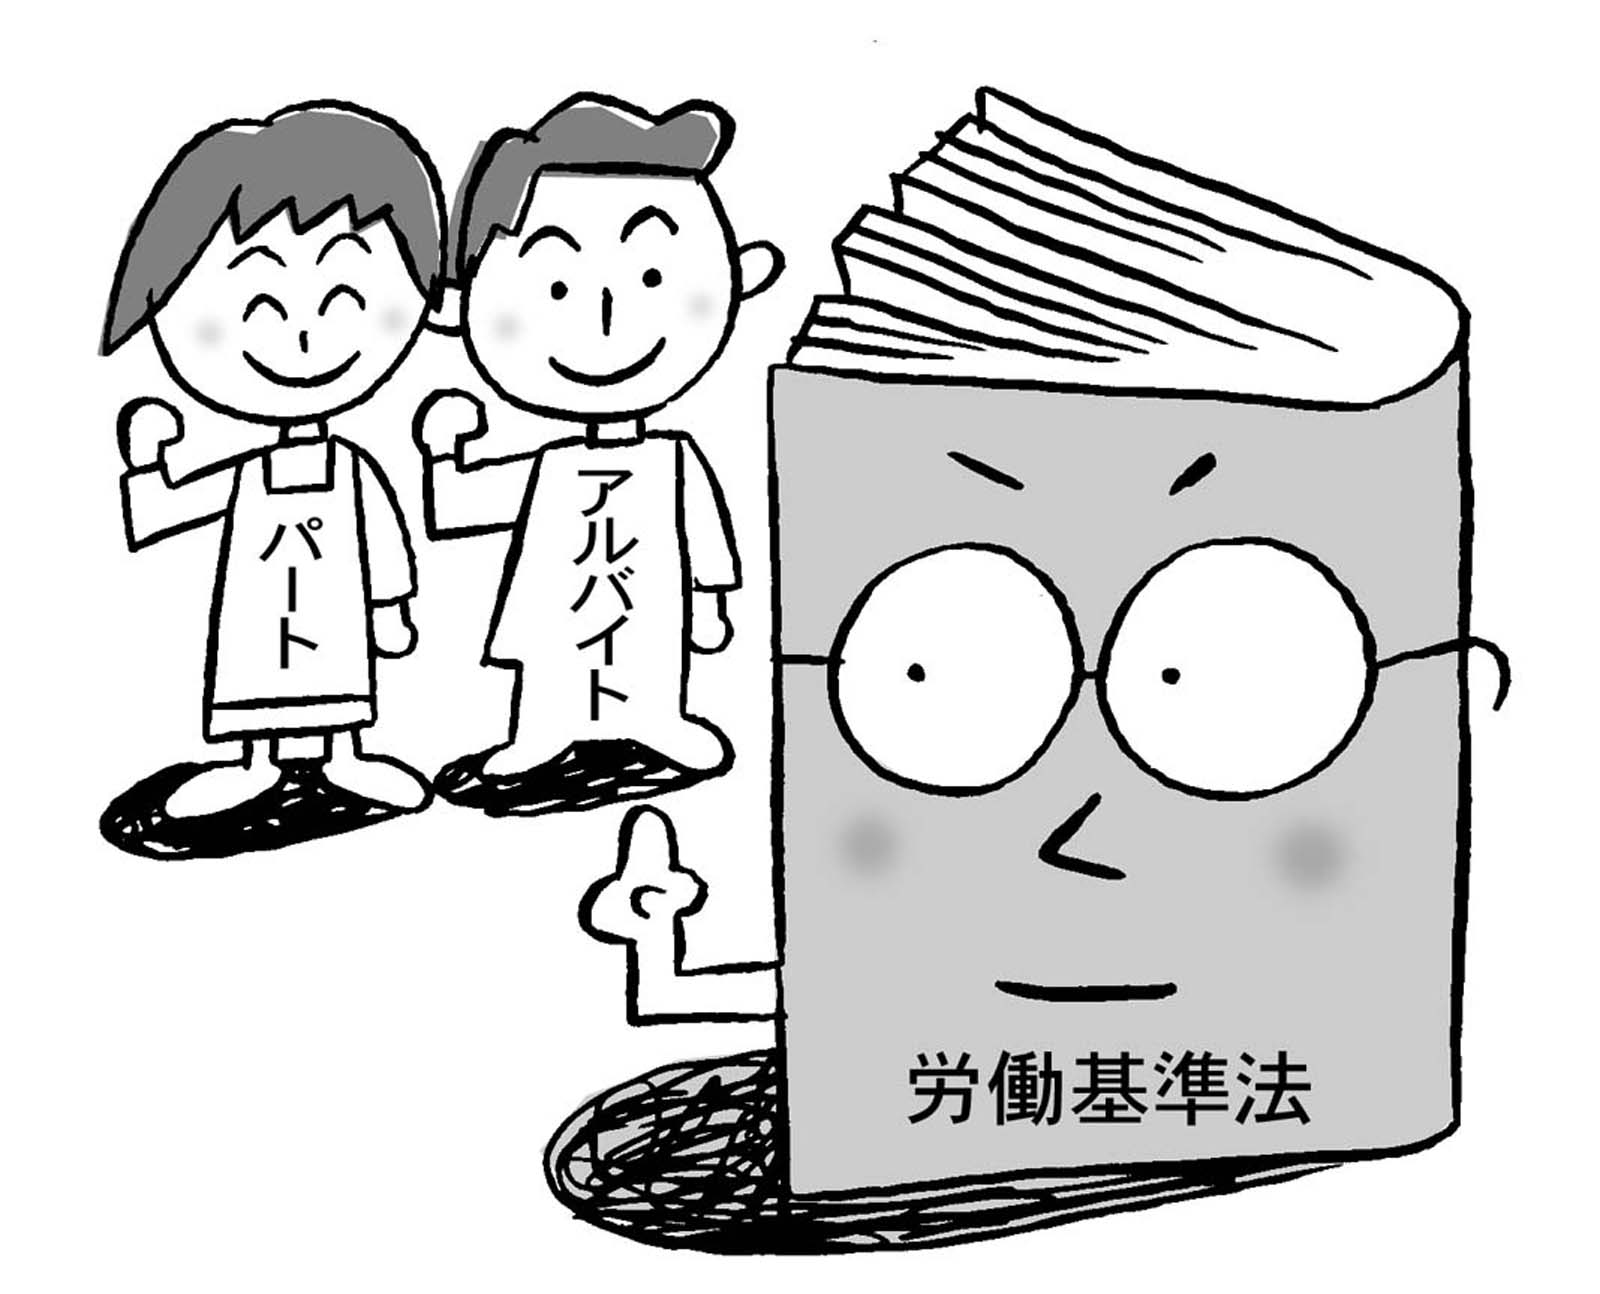 台湾労務:夏季の学生アルバイトの採用には注意が必要